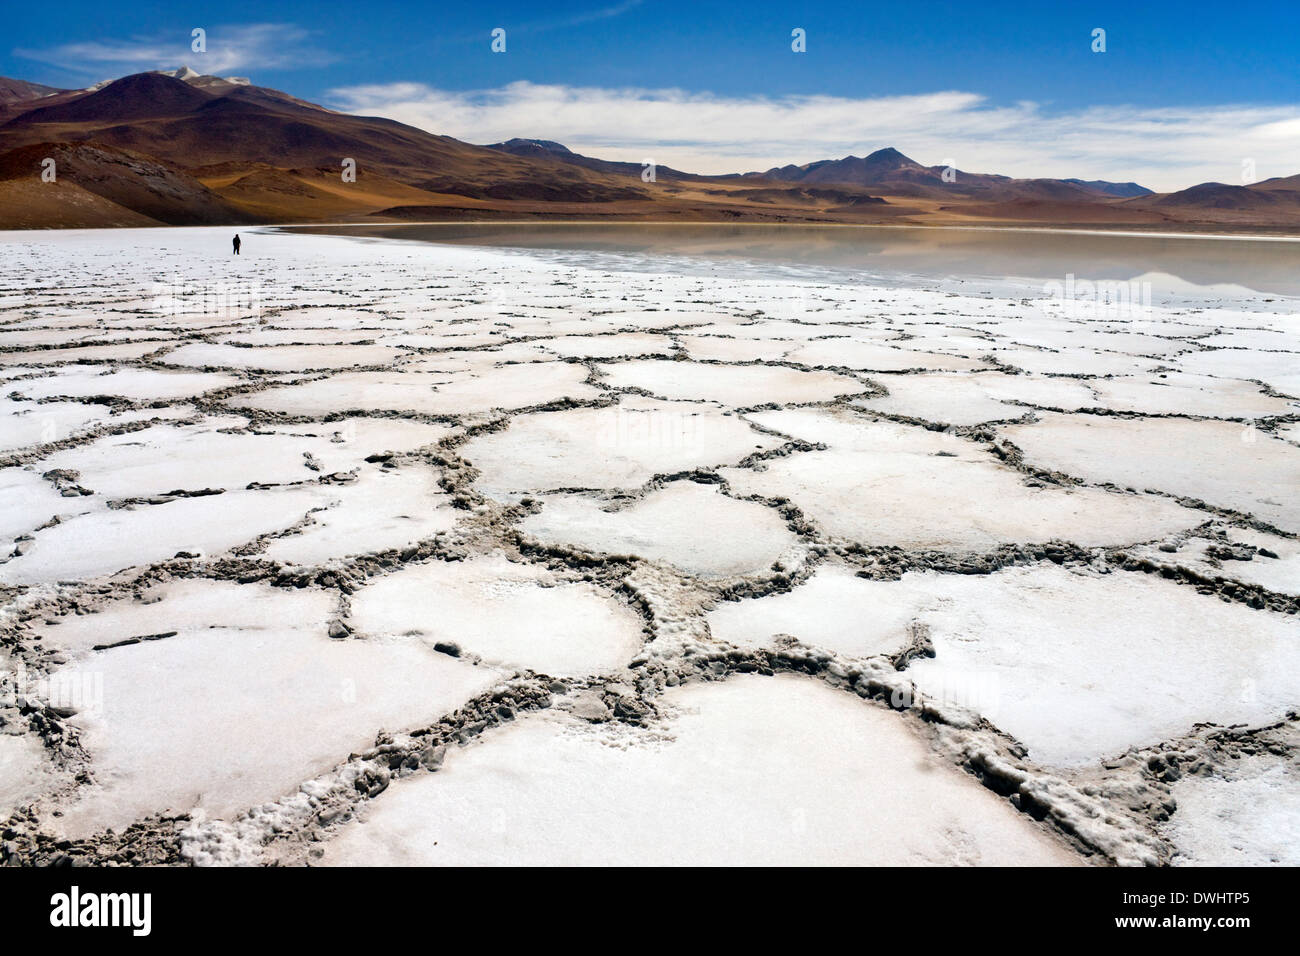 Remote Laguna Tuyajto & sale appartamenti (circa 3800m) nel deserto di Atacama nel nord del Cile in Sud America Foto Stock